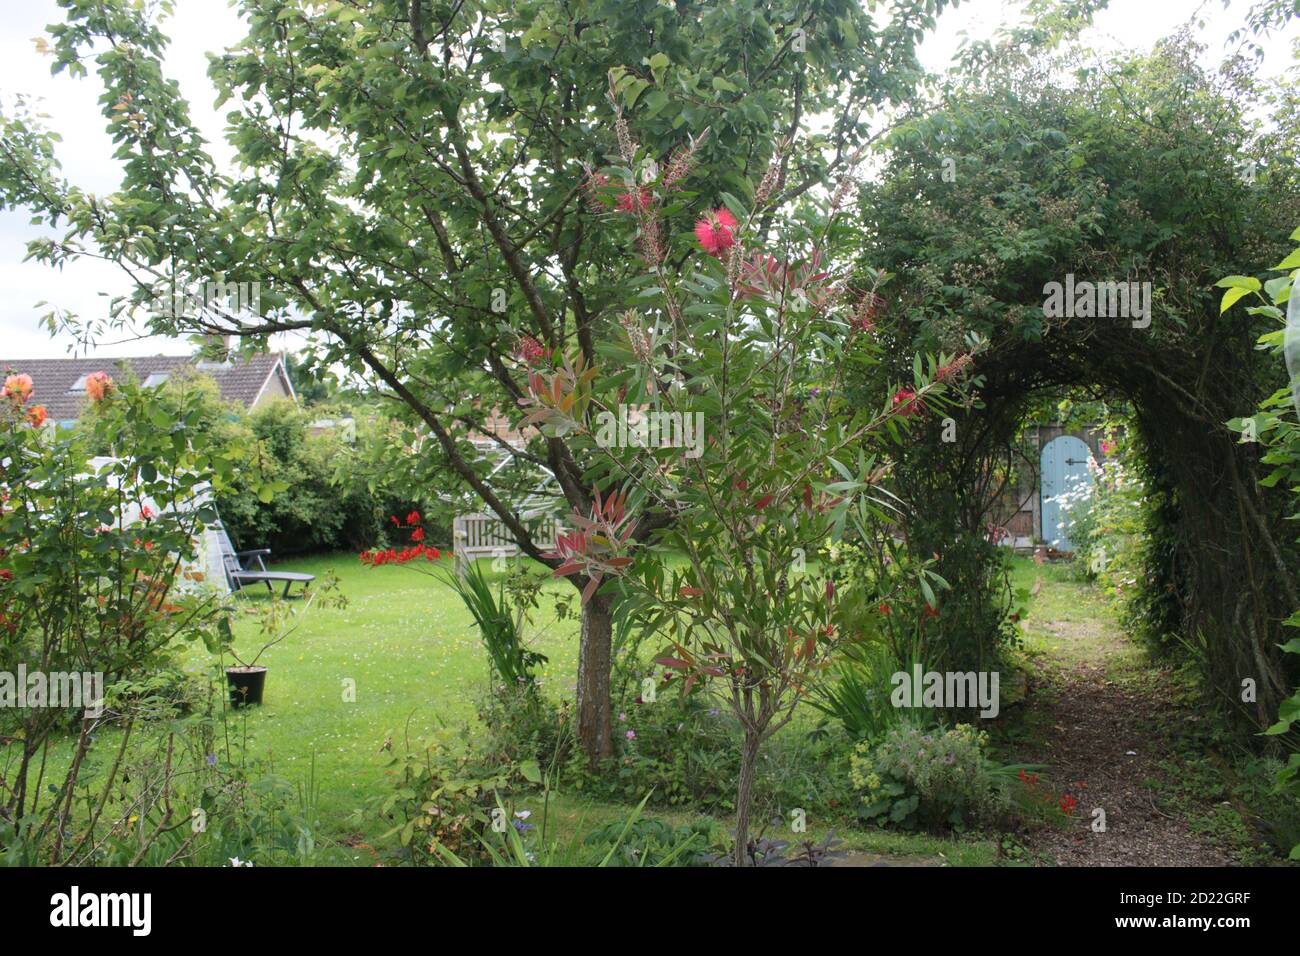 Vista sul paesaggio nel giardino estivo di campagna inglese con pera di espalier albero con frutta lavanda rosa arco fiori cespuglio erba prato & piante & porta segreta Foto Stock